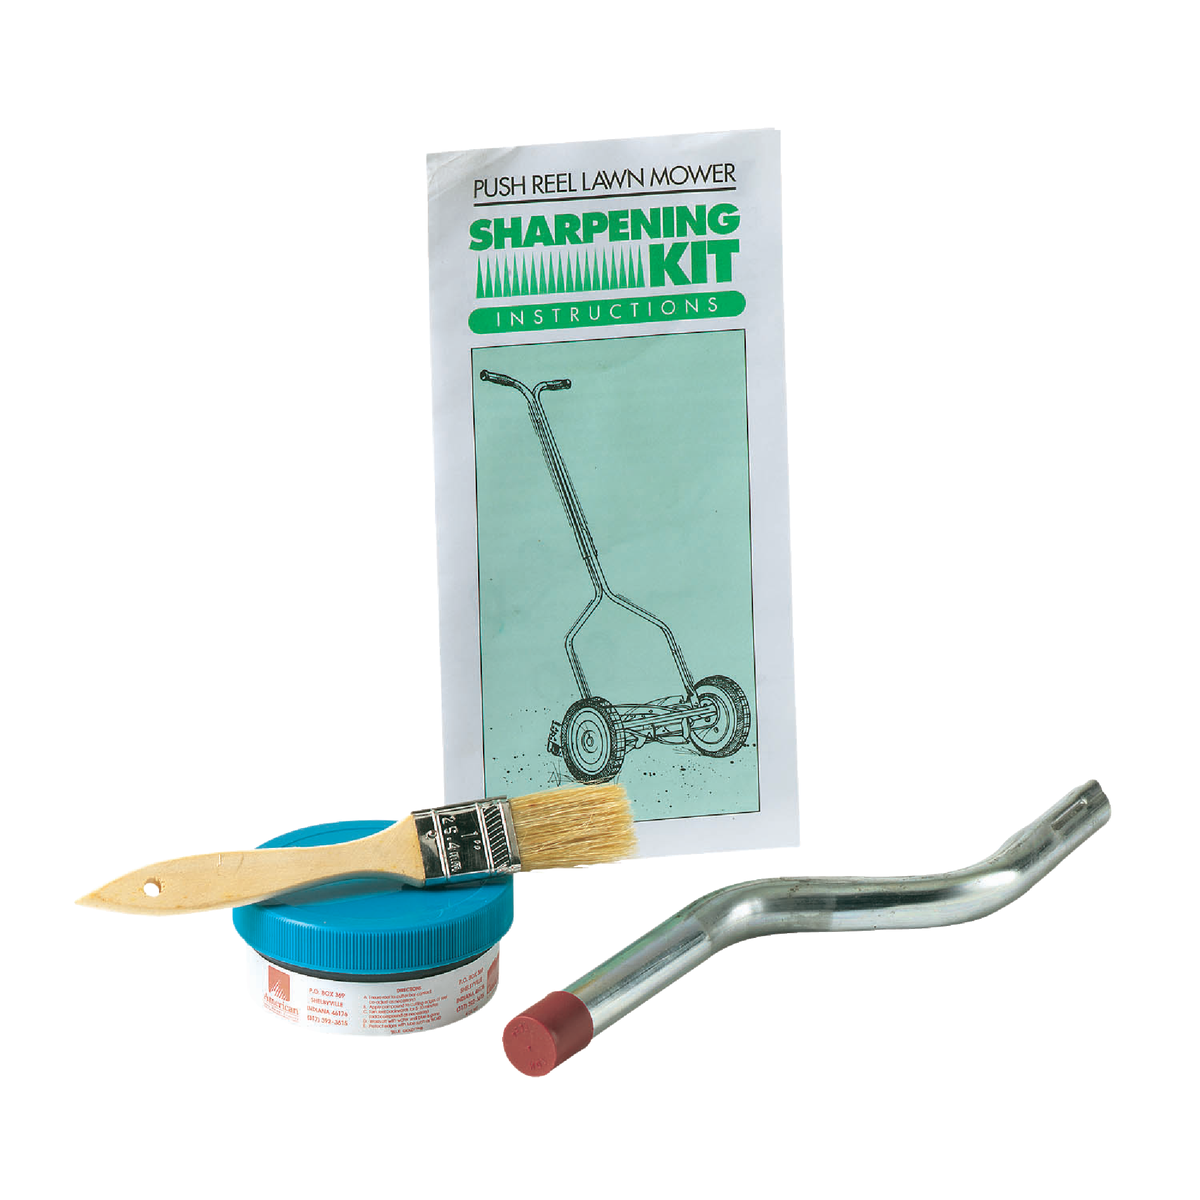 Tool Sharpening Kits